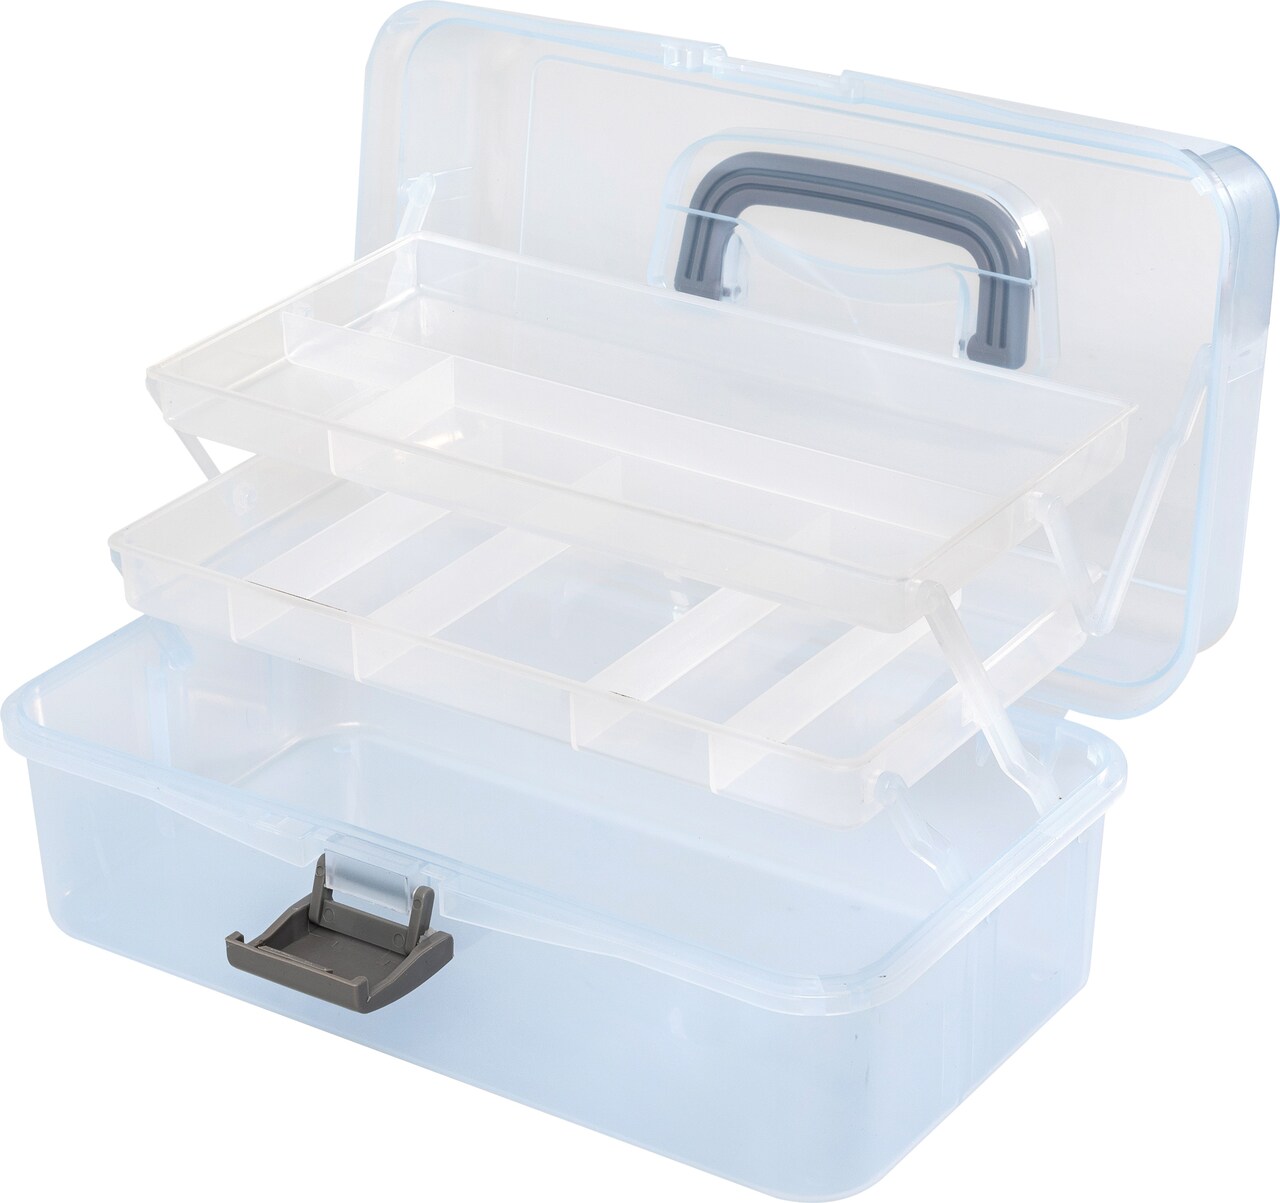 We R Craft Tool Box Translucent Plastic Storage-11.8X6.7X5.5 Case